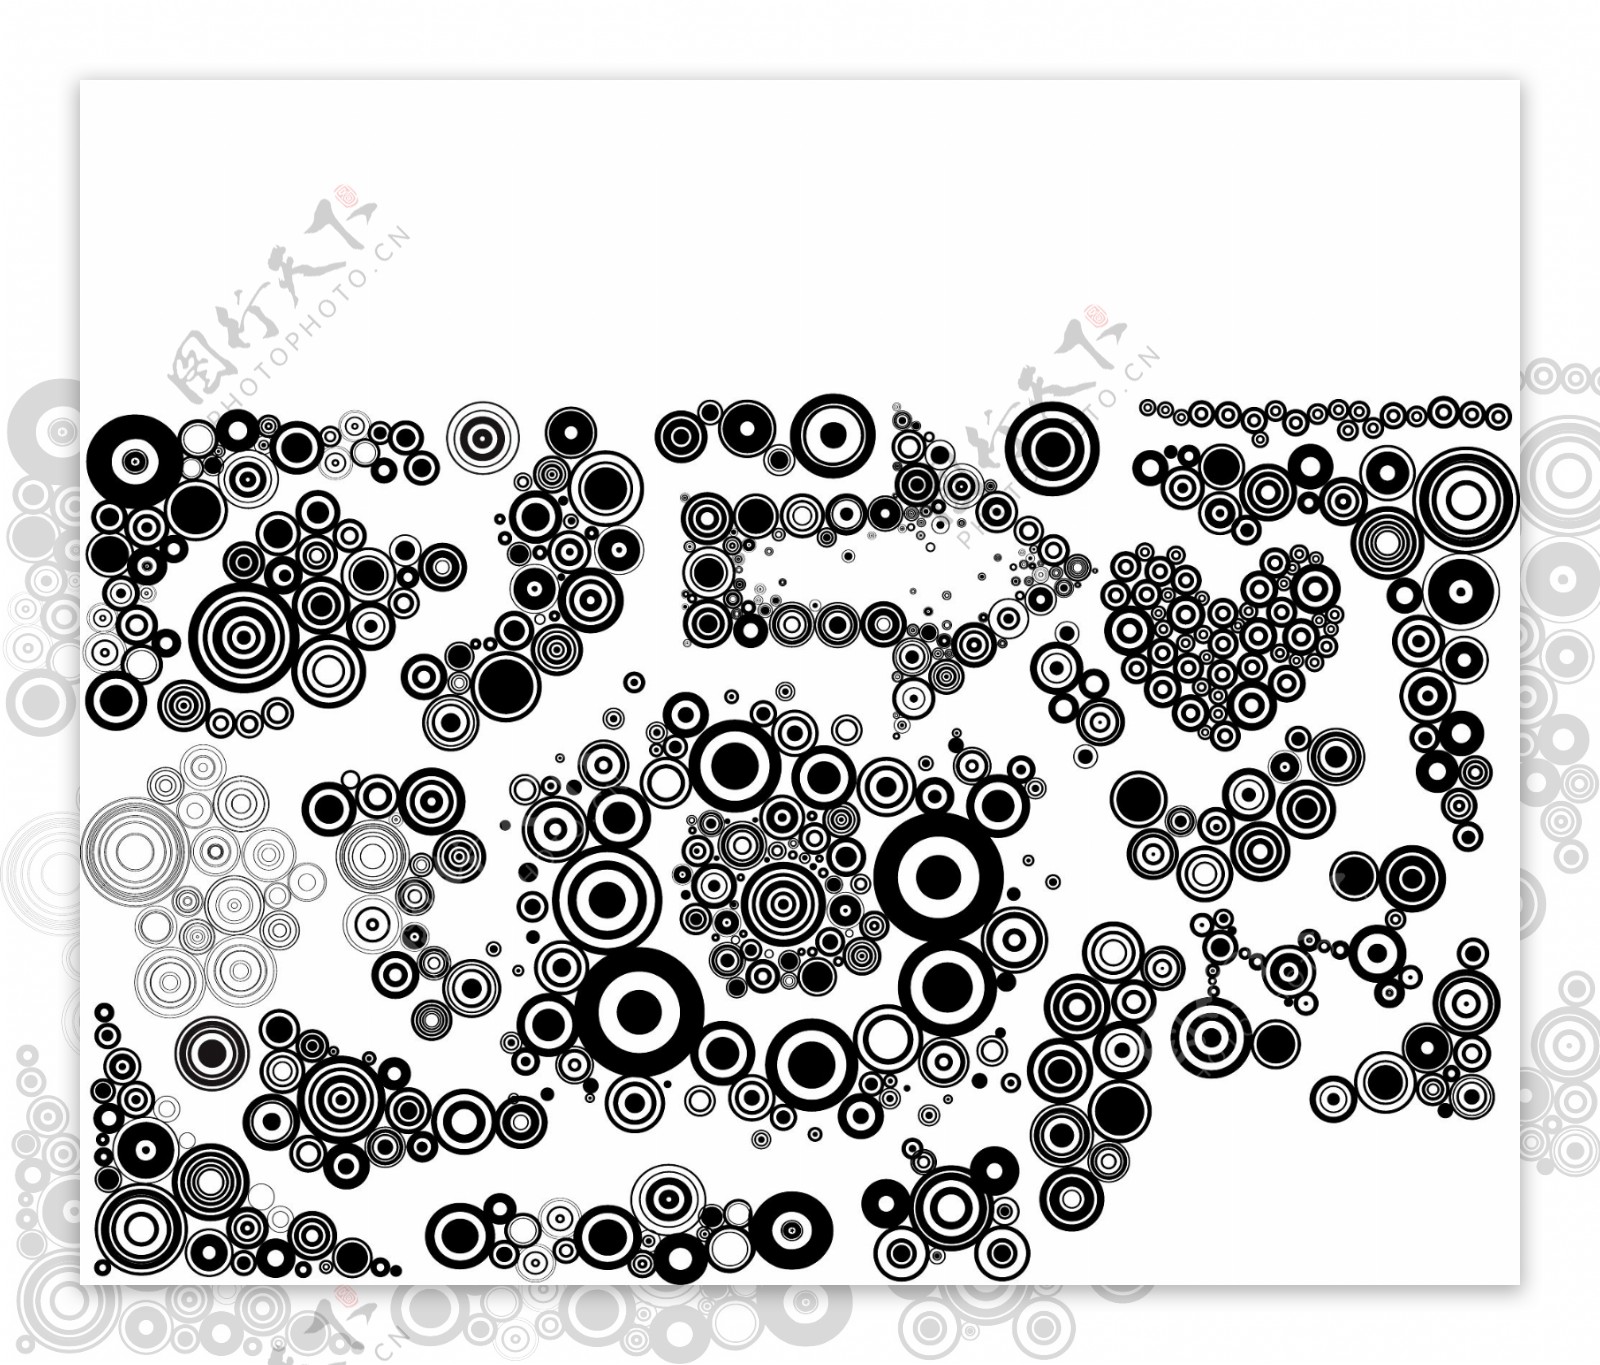 黑色和白色的设计元素系列矢量素材10循环模式